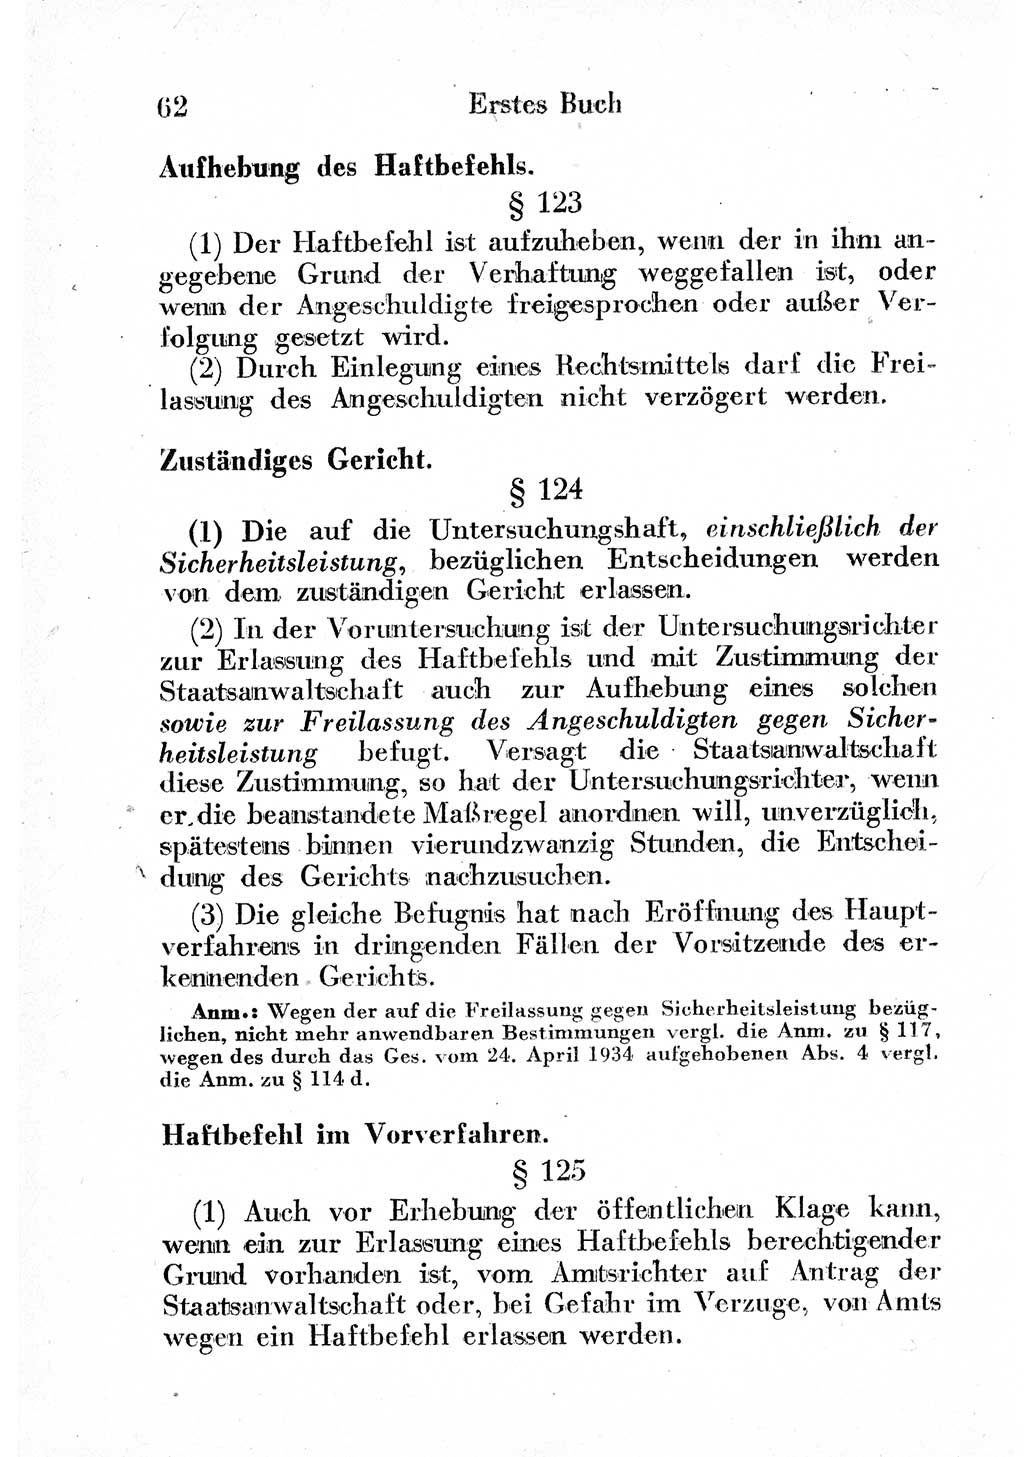 Strafprozeßordnung (StPO), Gerichtsverfassungsgesetz (GVG) und zahlreiche Nebengesetze der sowjetischen Besatzungszone (SBZ) in Deutschland 1949, Seite 62 (StPO GVG Ges. SBZ Dtl. 1949, S. 62)